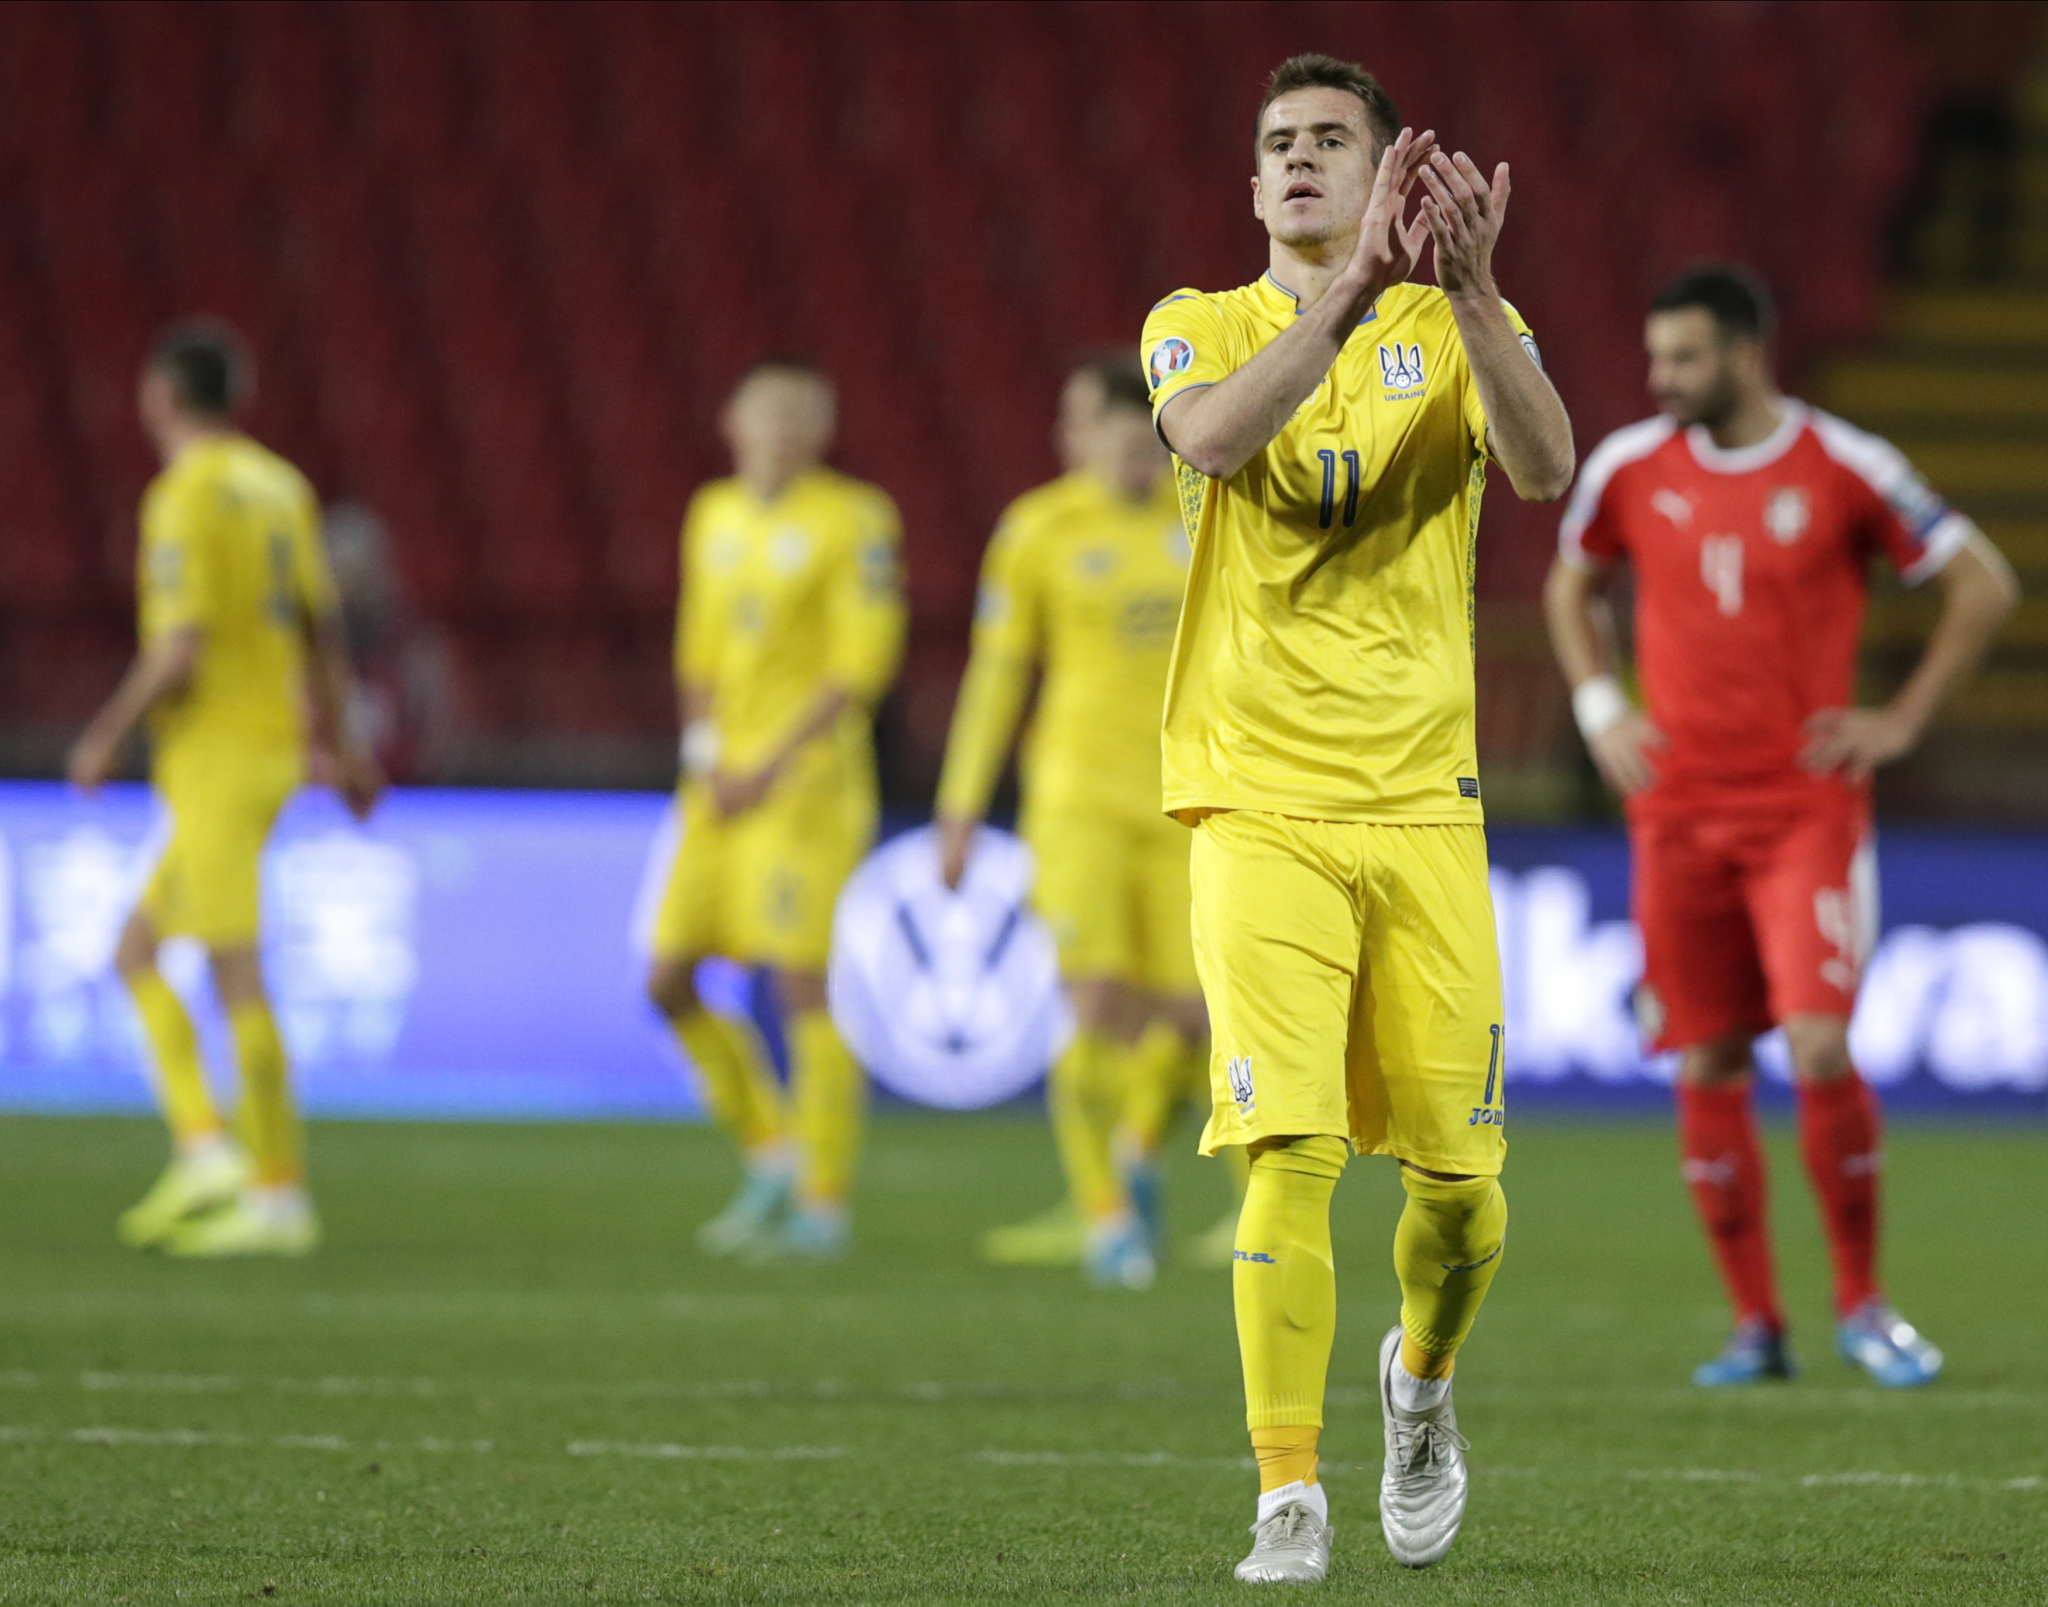 NEOBIČNA ODLUKA Ukrajina želi da bude domaćin Svetskog prvenstva u fudbalu